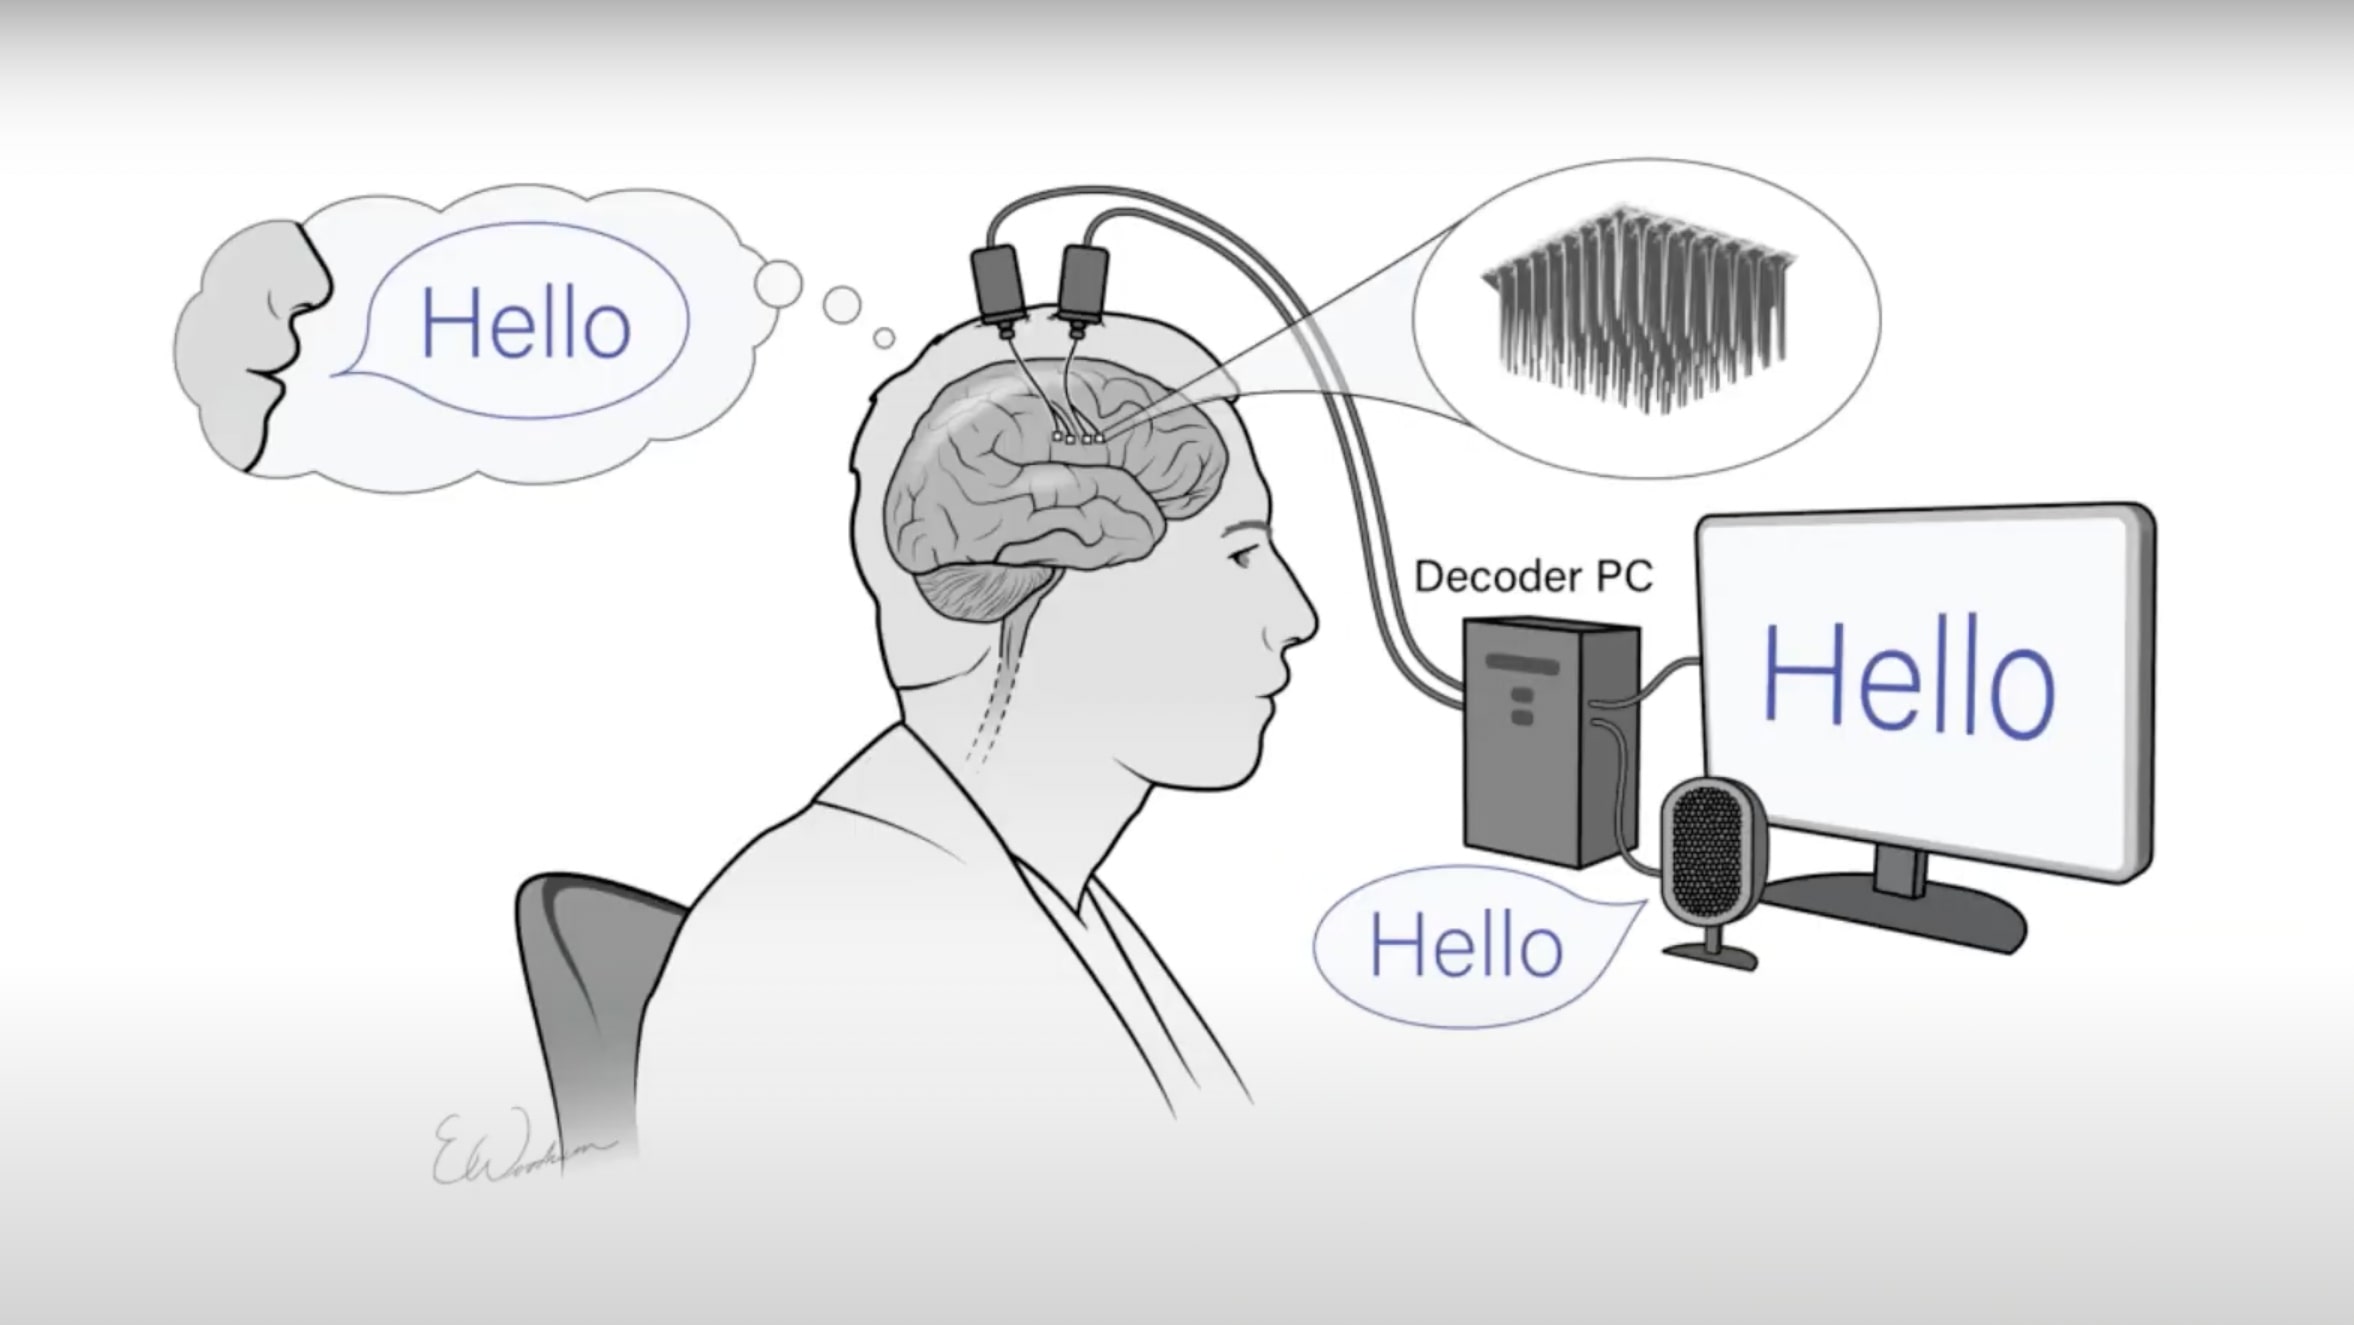 スタンフォード大学、音声脳インターフェイスで「分速62語」のコミュニケーションを達成─最高記録の3倍の語数